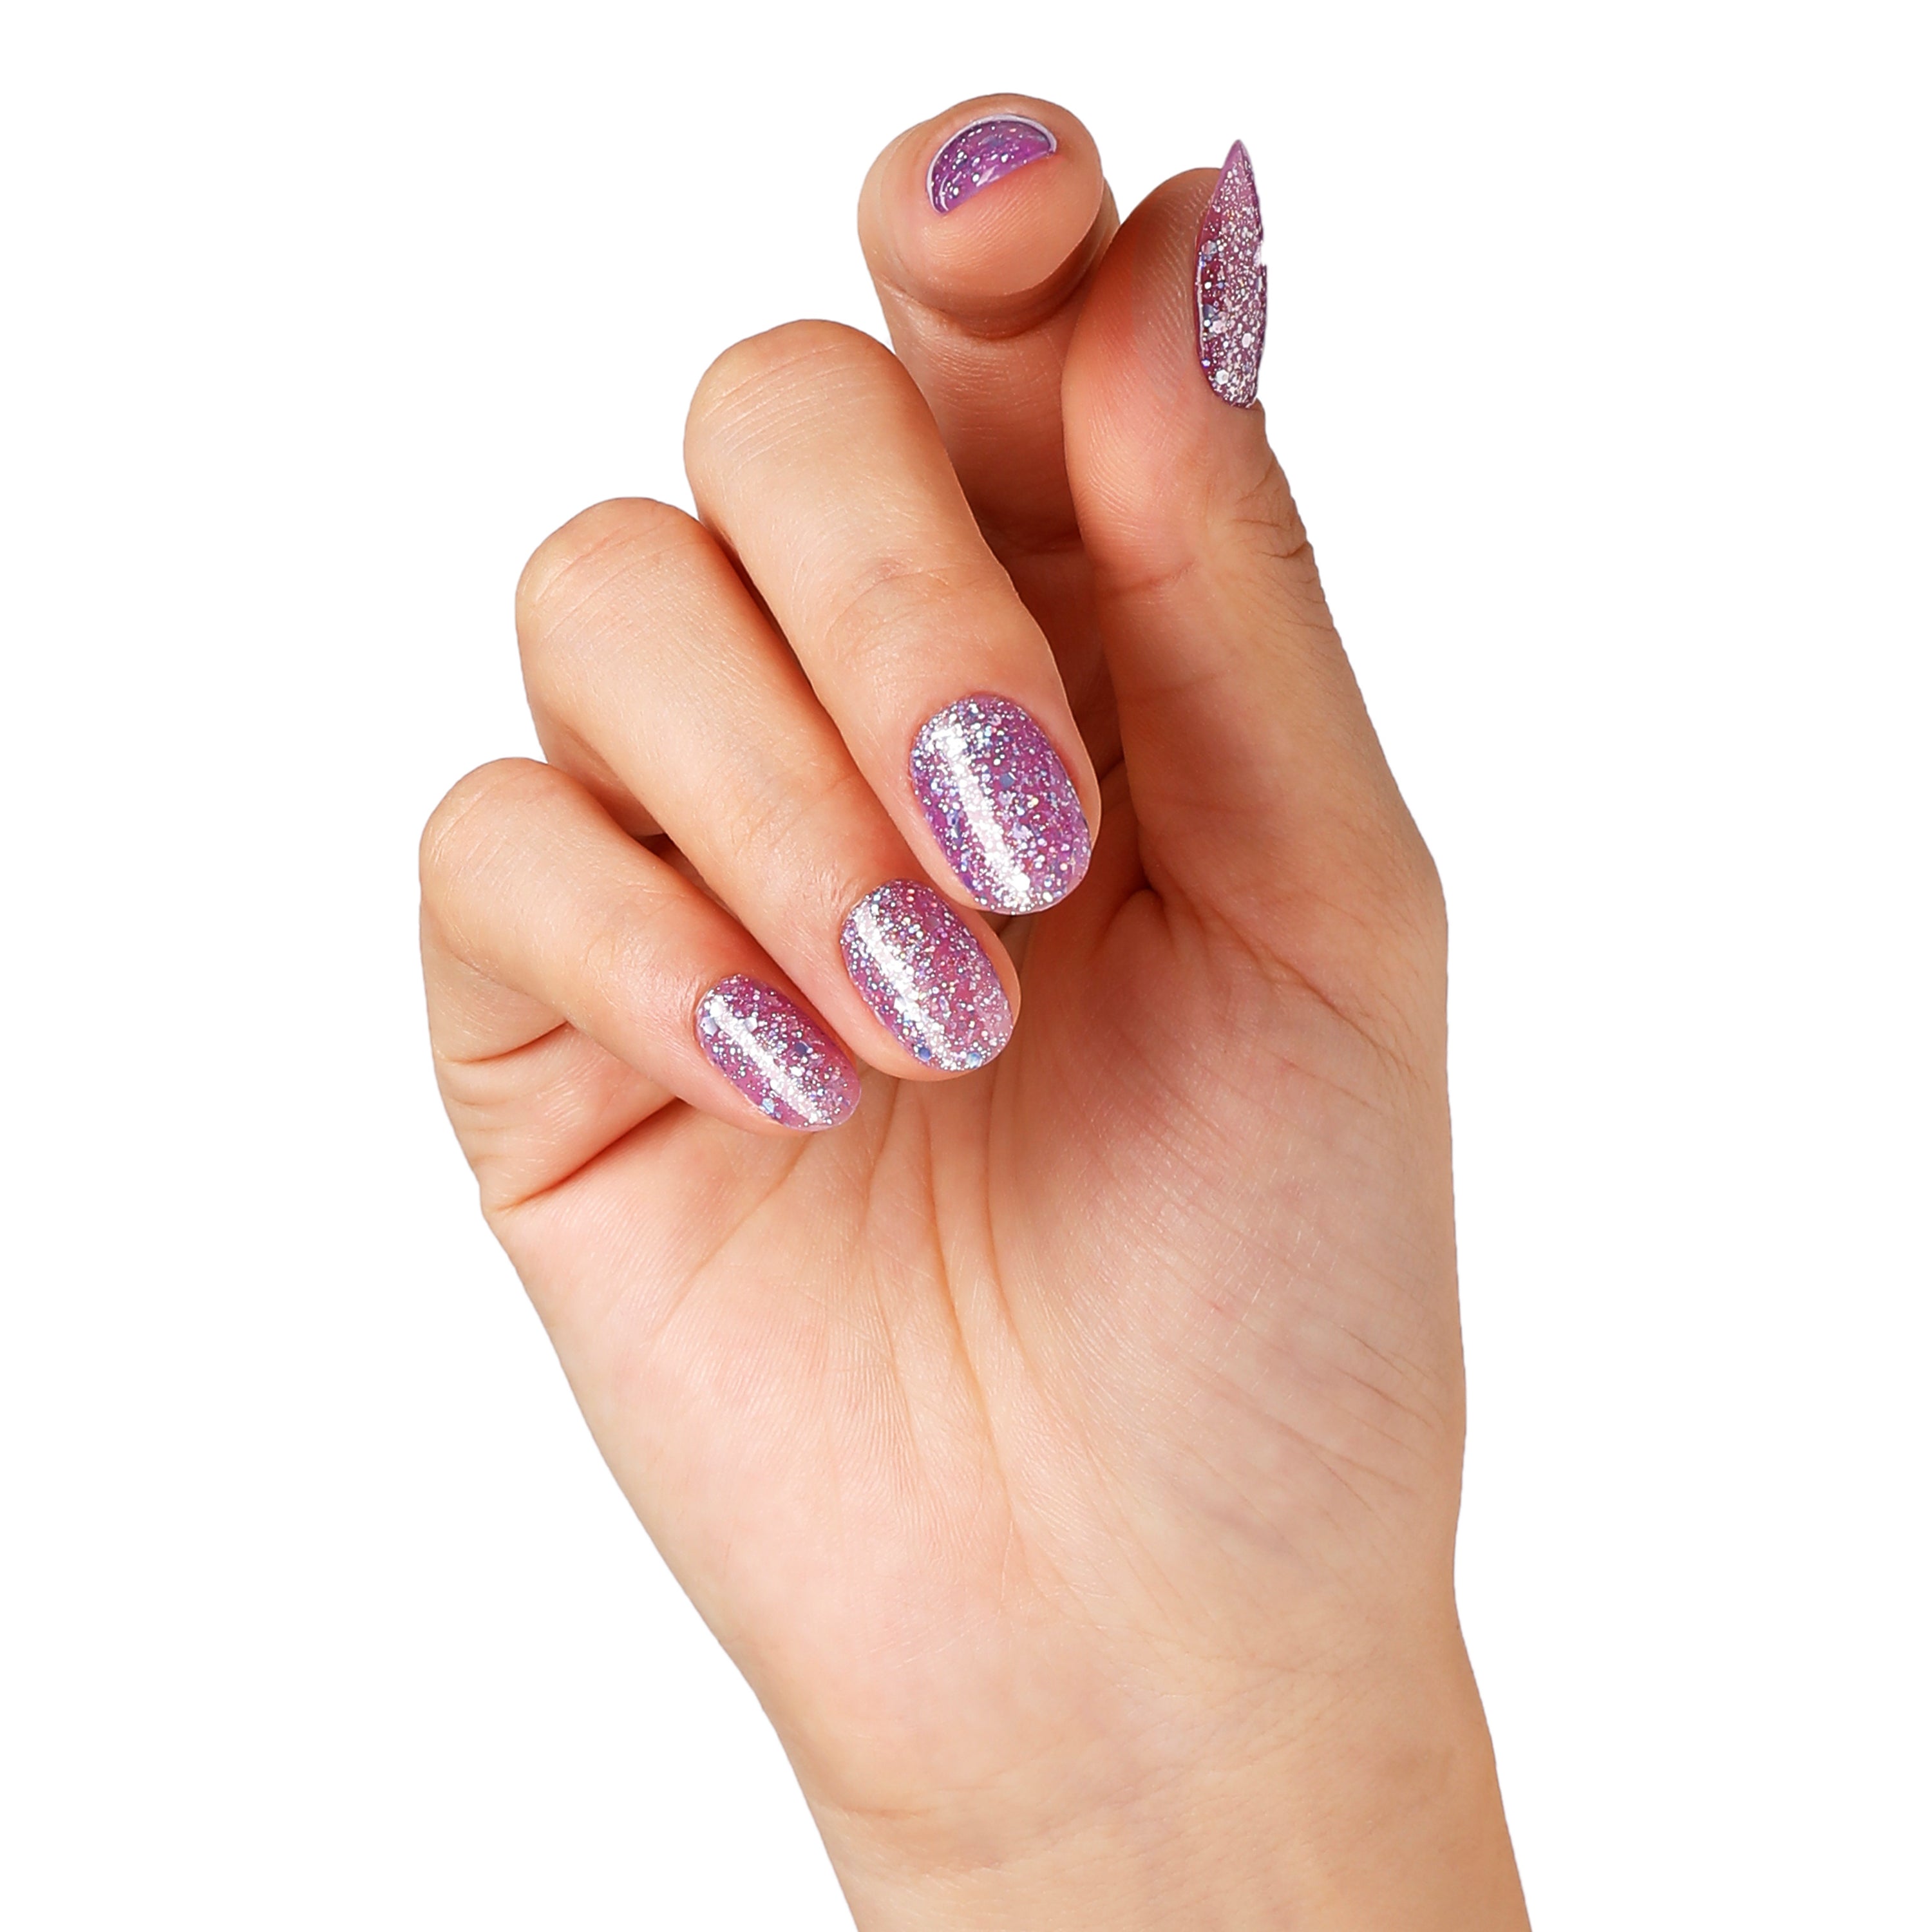 Purple Dream | Super Glitter Confetti Color | 10ml Gel Polish - BLUESKY